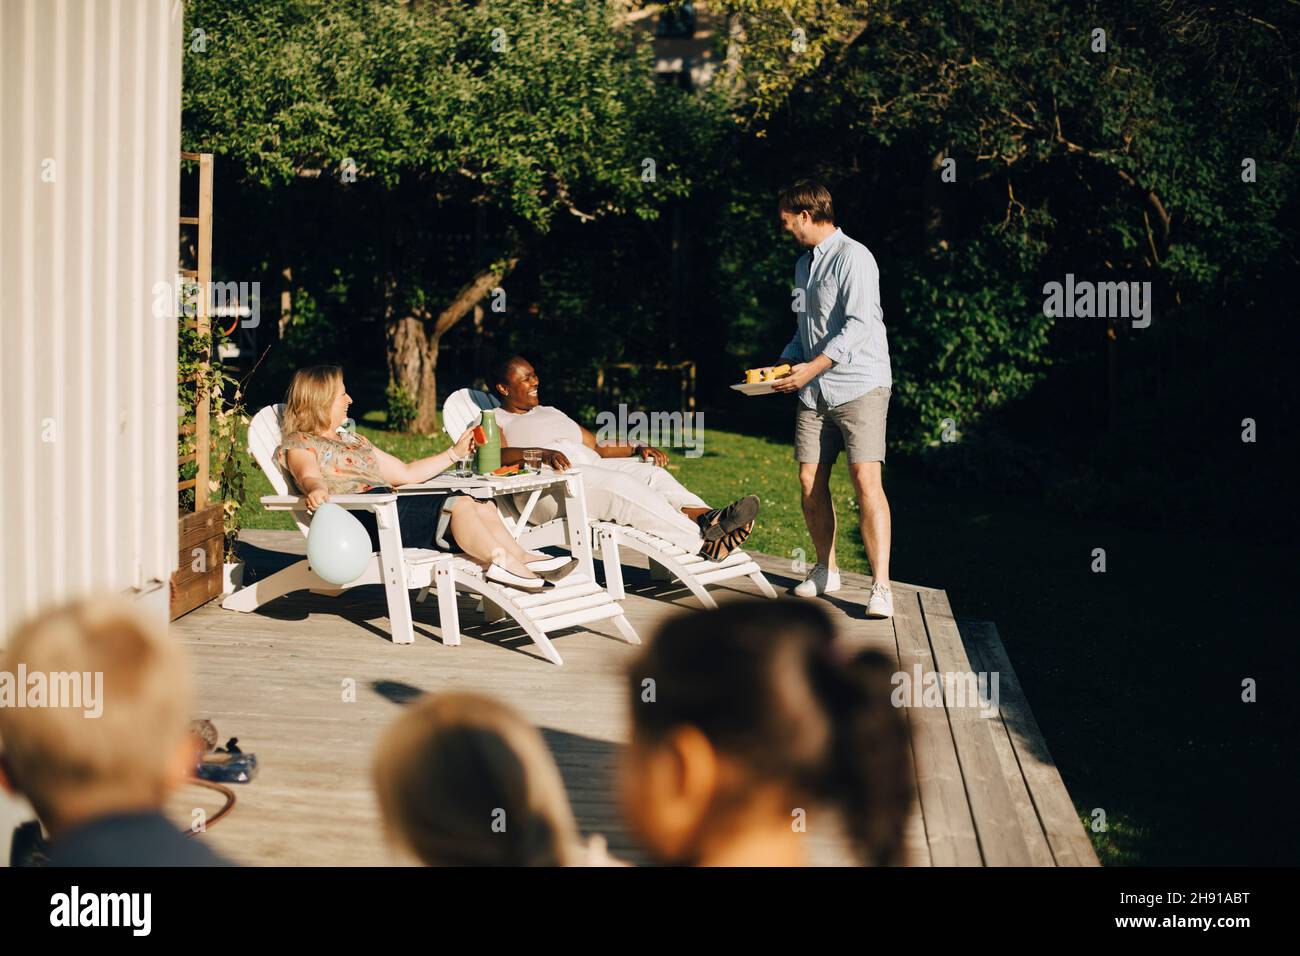 Mann, der Frauen während einer Gartenparty auf der Terrasse Essen servierte Stockfoto